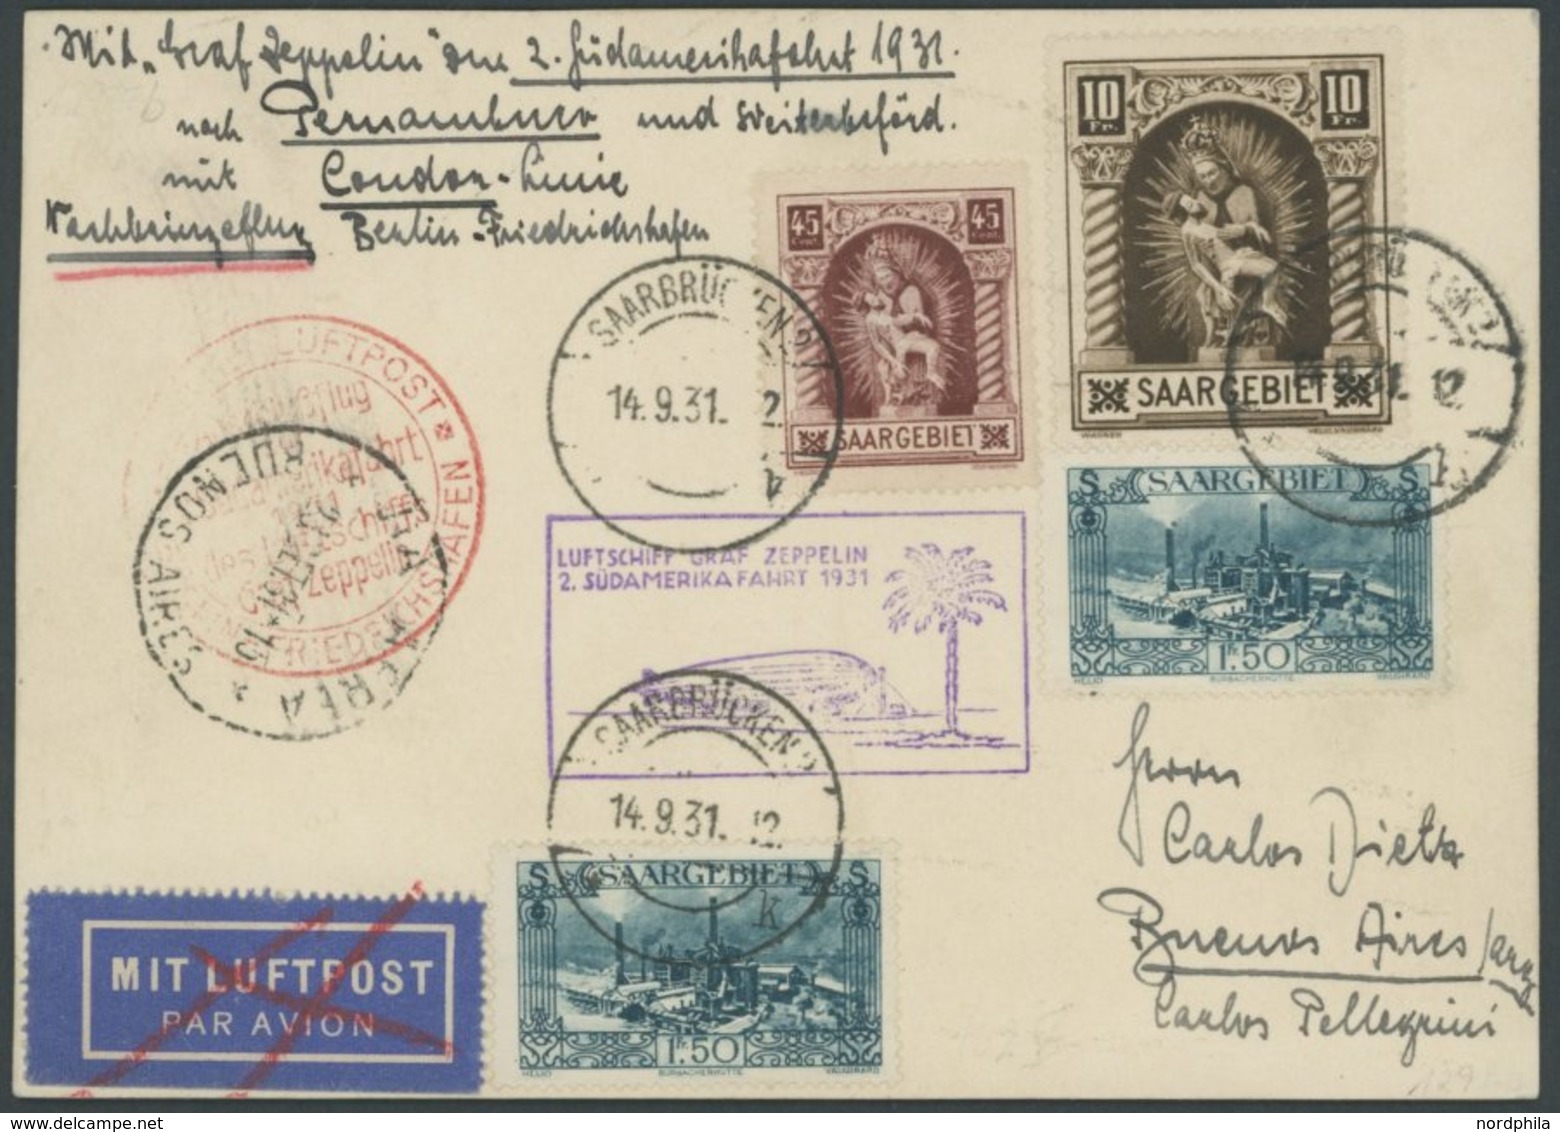 ZULEITUNGSPOST 129Eb BRIEF, Saargebiet: 1931, 2. Südamerikafahrt, Anschlussflug Ab Berlin, Prachtkarte - Poste Aérienne & Zeppelin